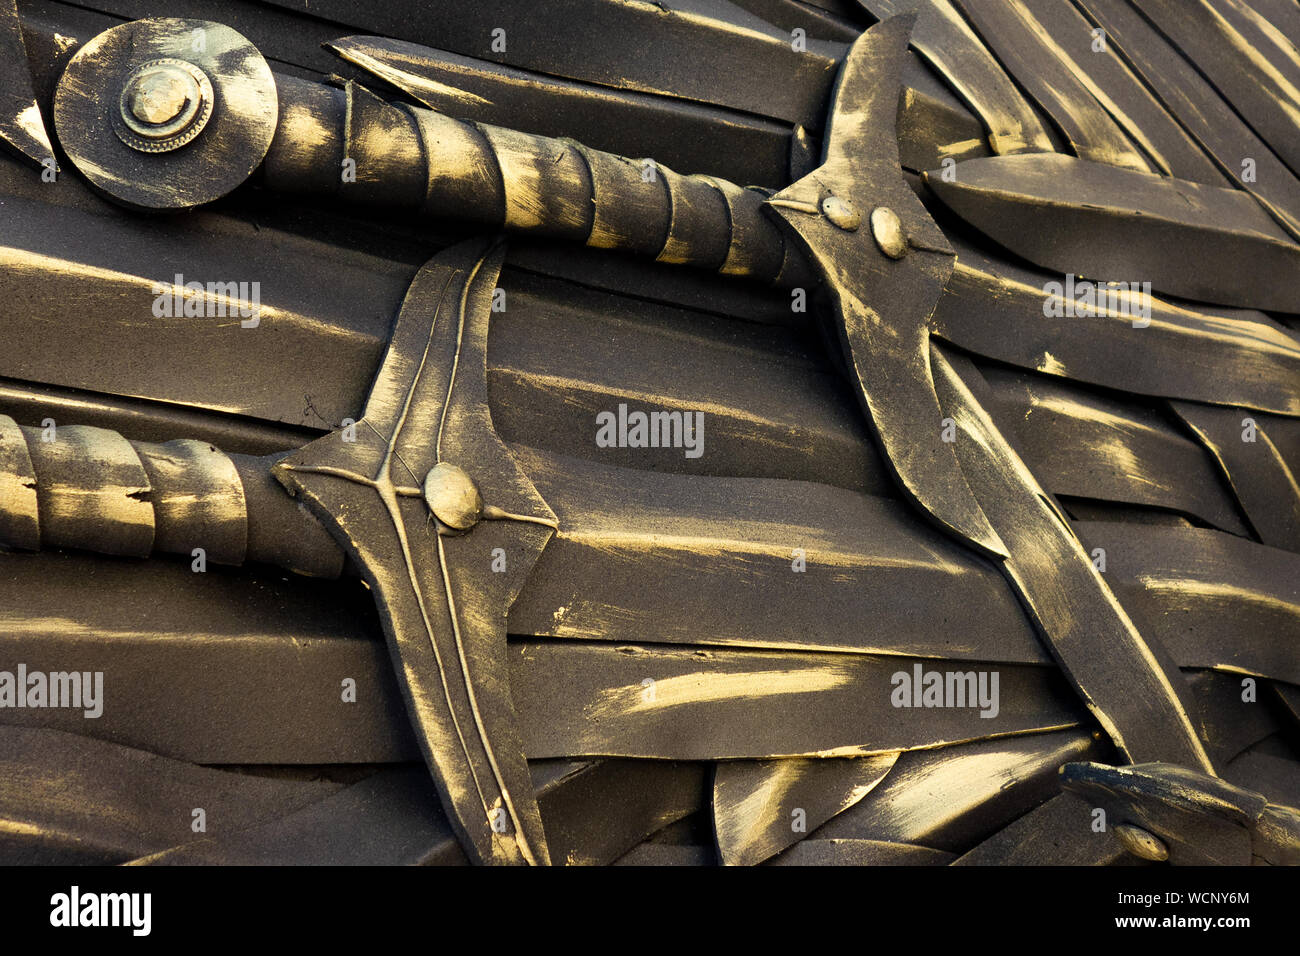 Pile Des Munitions Avec La Tête Ronde Et Le Fond Plat Image stock - Image  du firearm, armé: 126903615